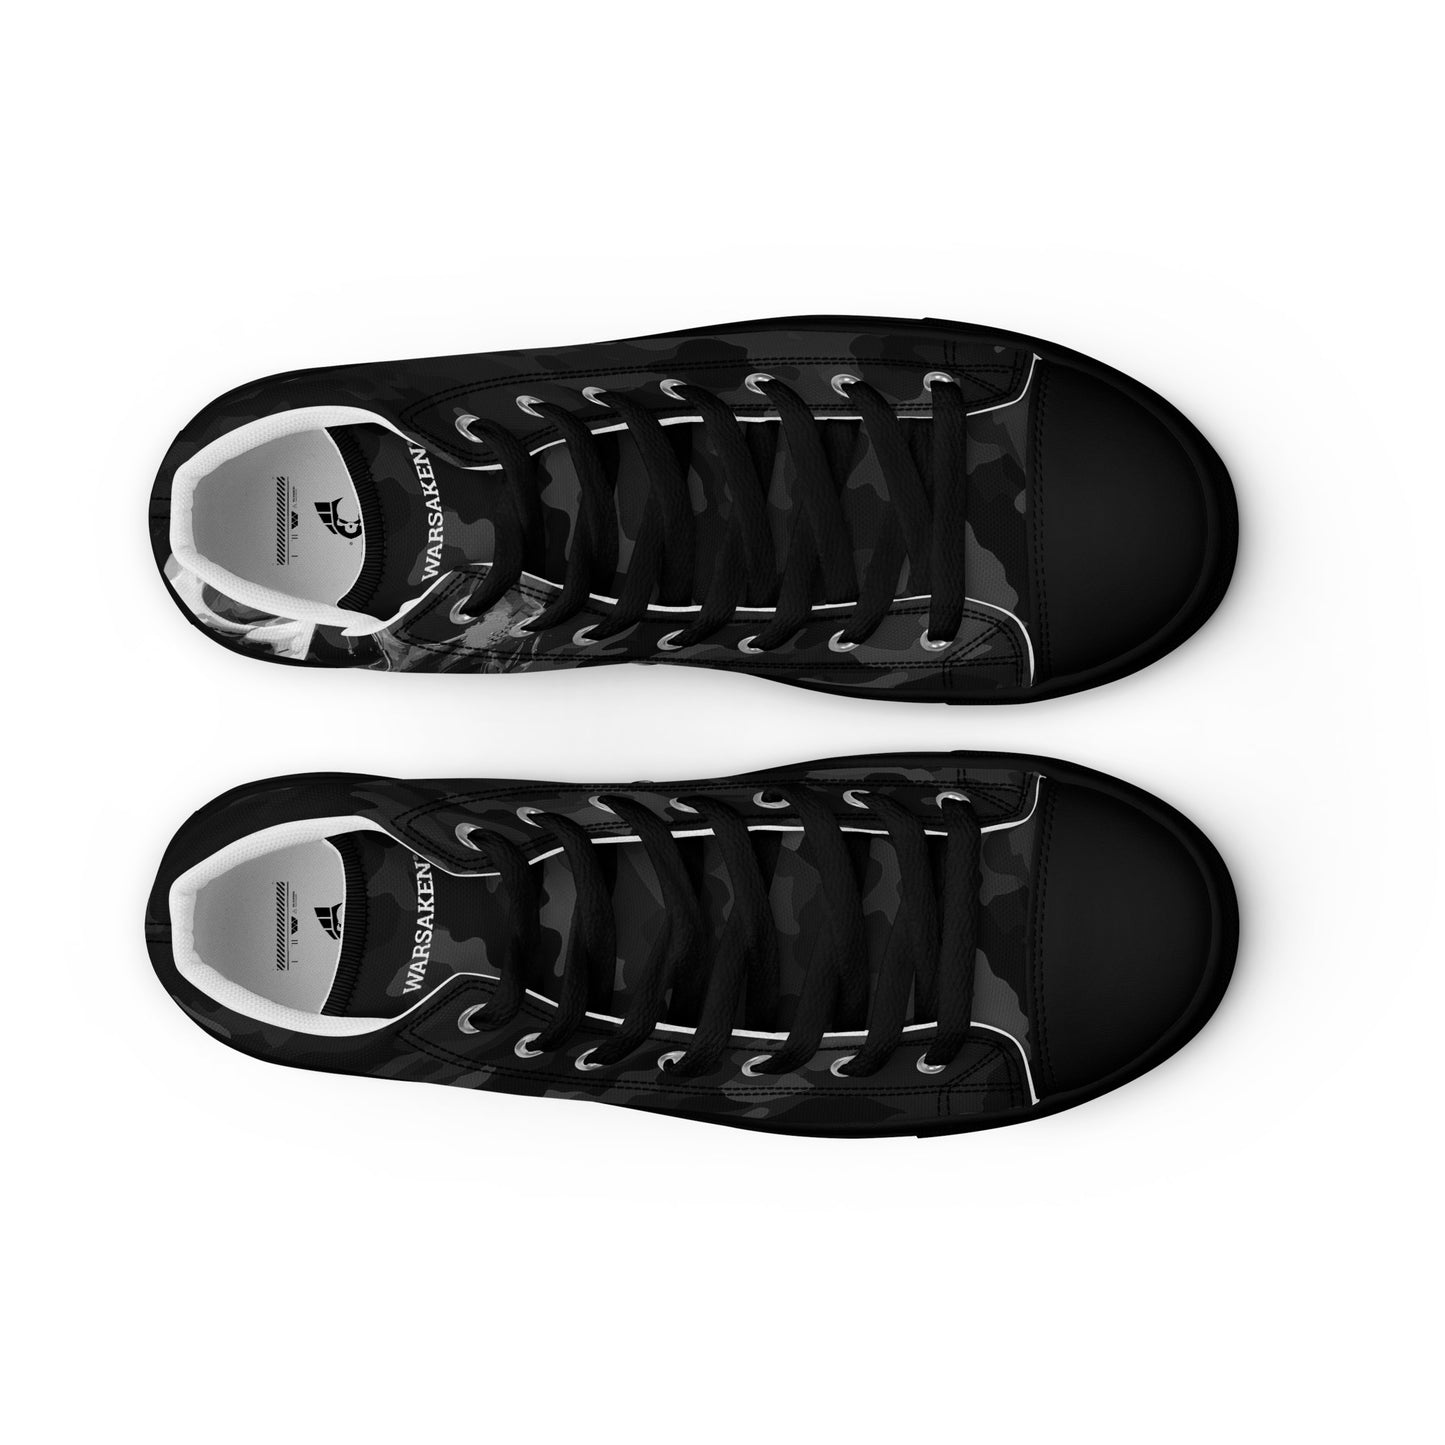 Women’s Warsaken® High Top Shoe : Black Camo